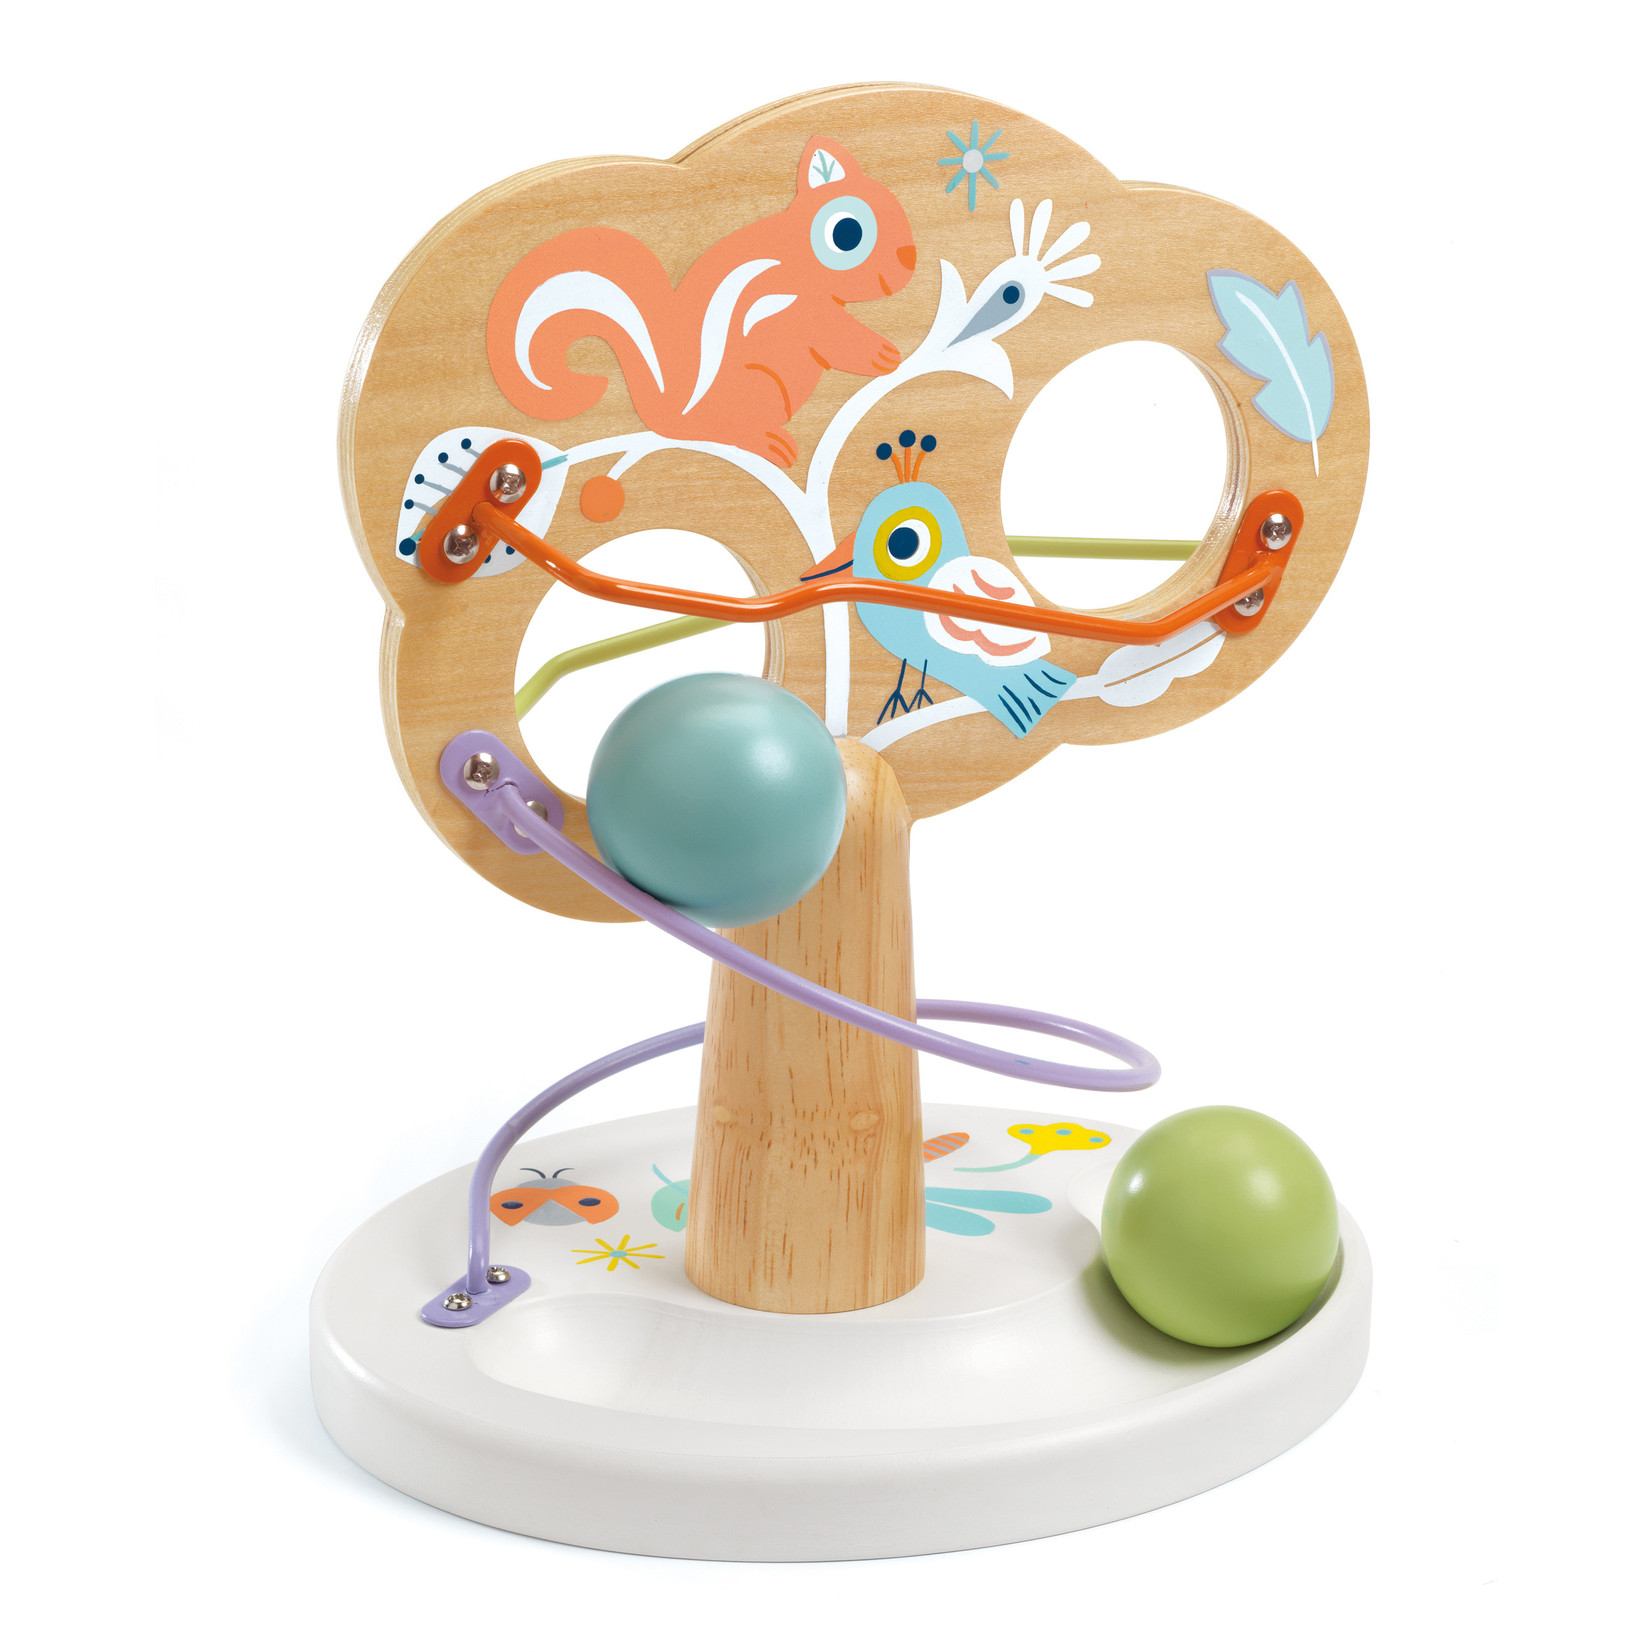 Djeco Baby Tree Activity Toy